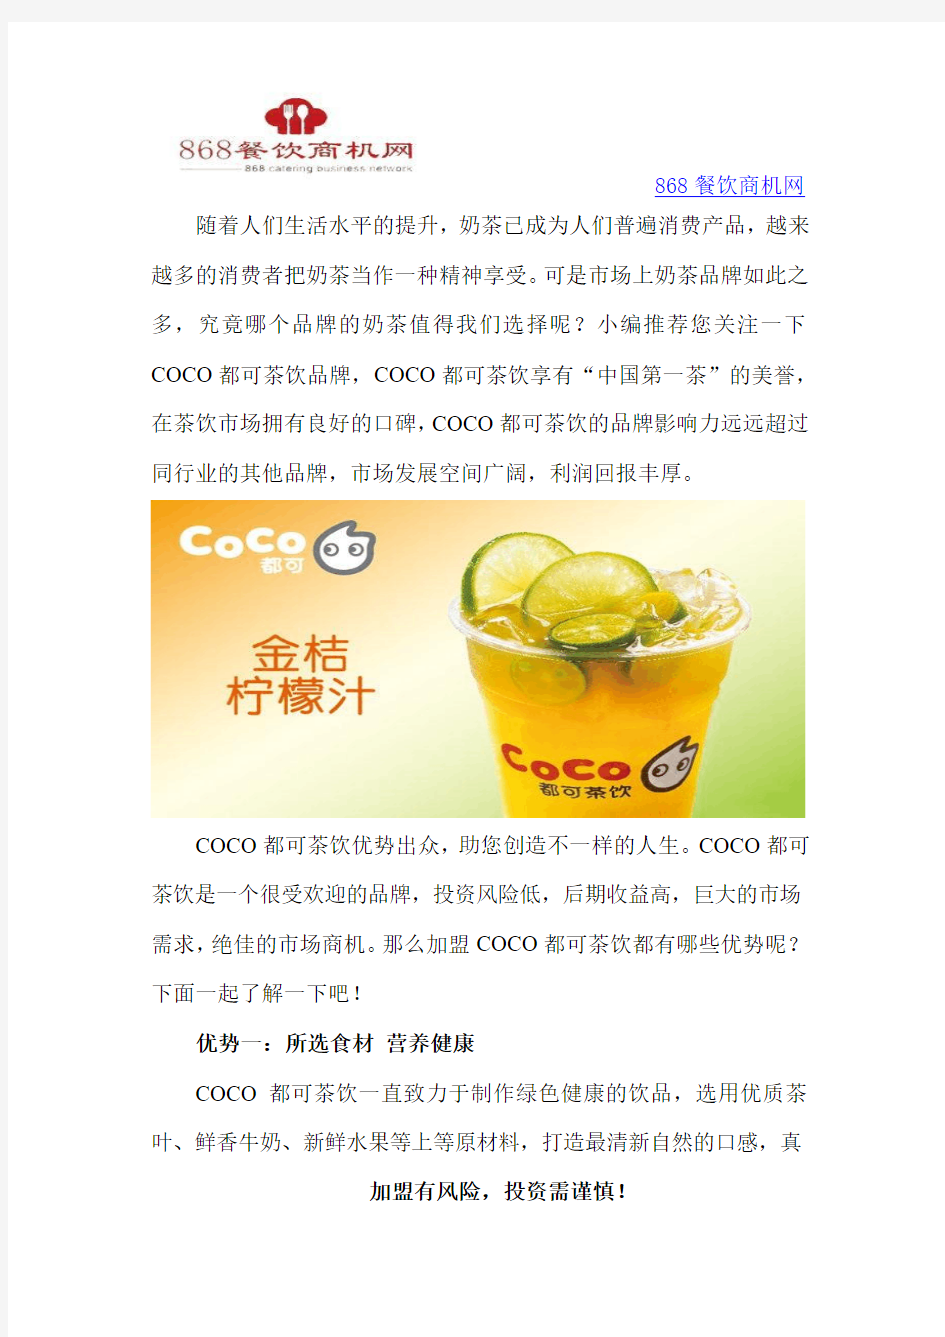 COCO都可茶饮优势出众,助您创造不一样的人生!